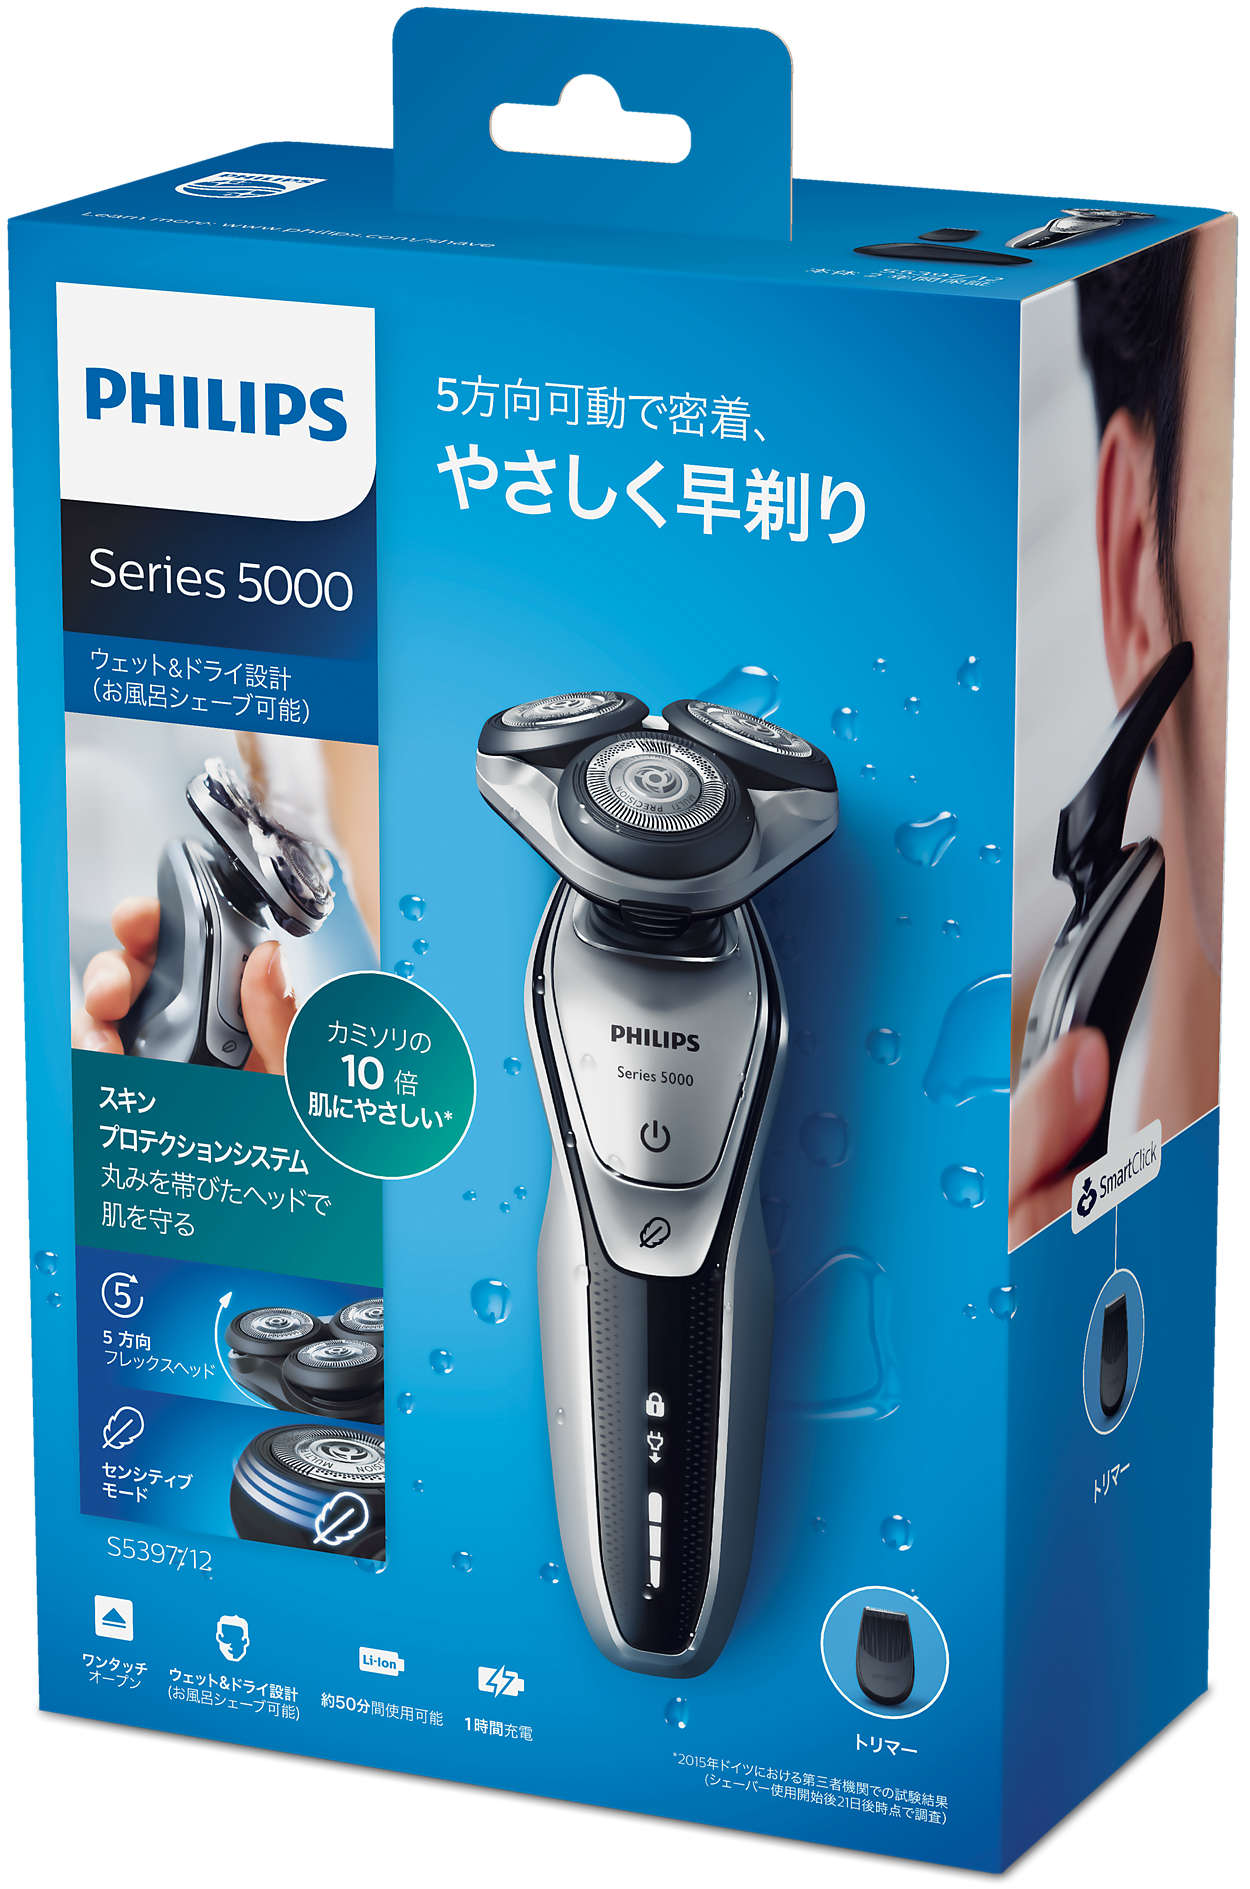 Shaver series 5000 ウェット＆ドライ電気シェーバー S5397/12 | Philips